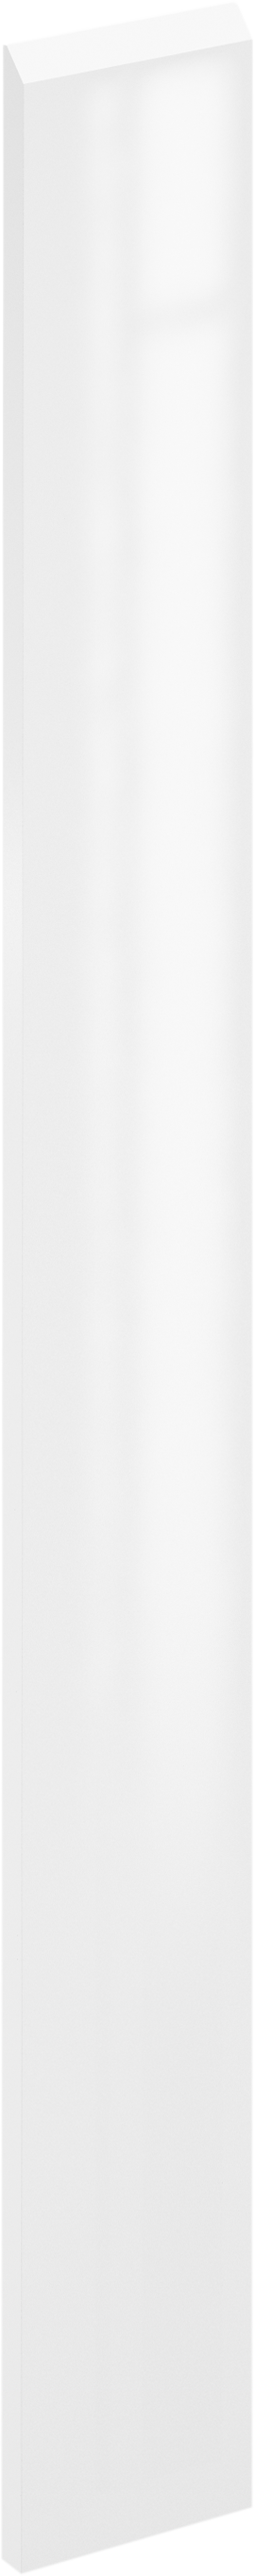 Puerta para mueble de cocina Tokyo blanco brillo H 76.8 x L 40 cm